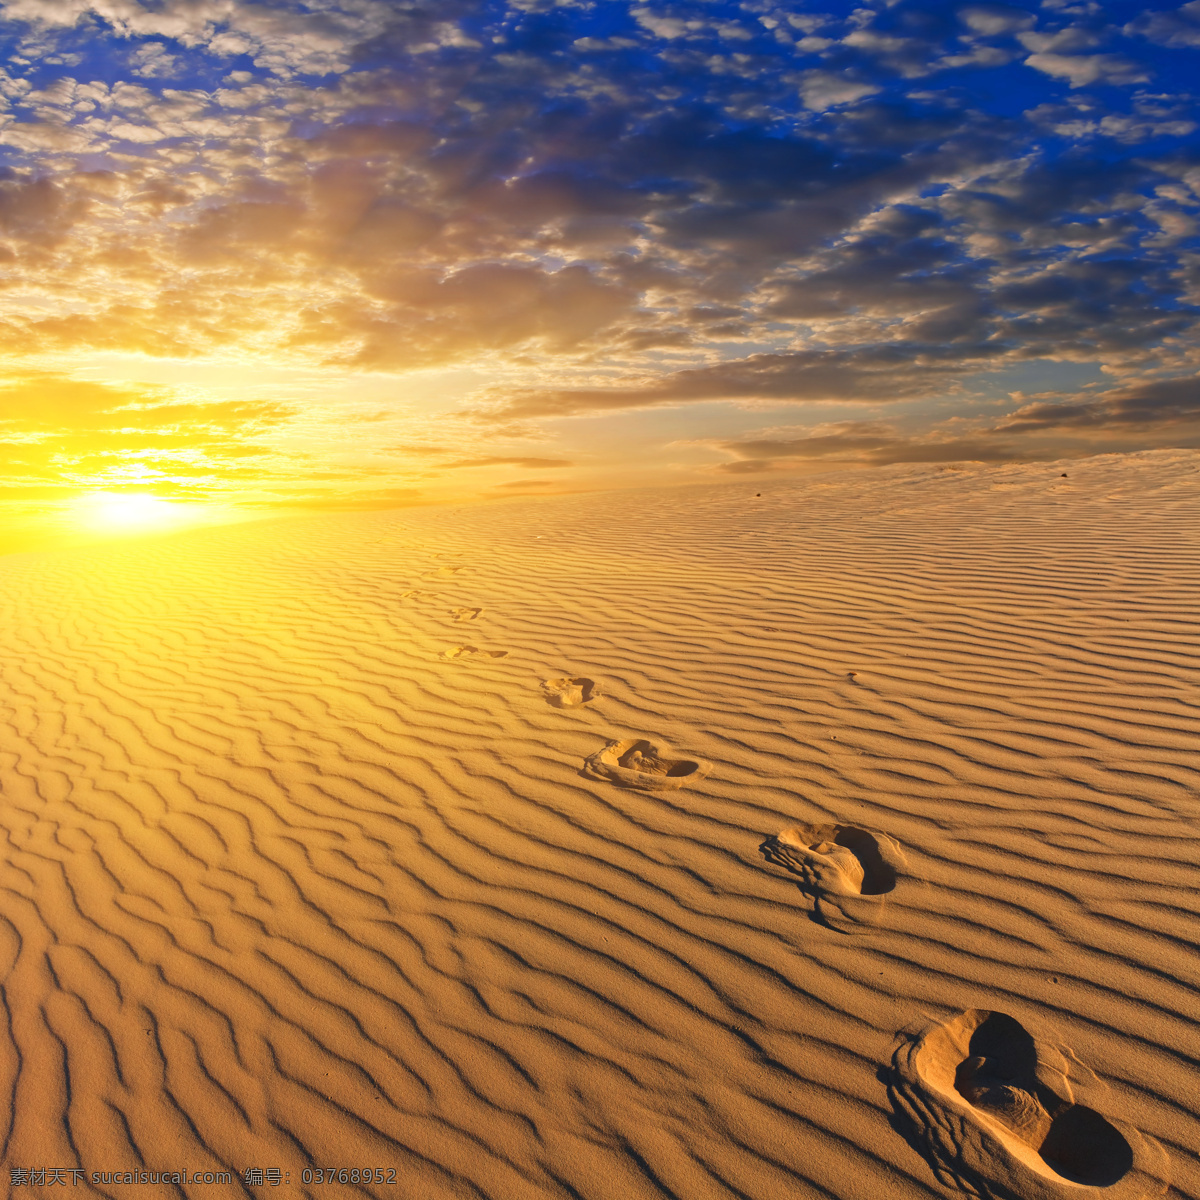 沙漠 中 脚印 落日 风景 旅游摄影 天空 白云 旅游 沙子 沙 自然风景 沙漠图片 风景图片